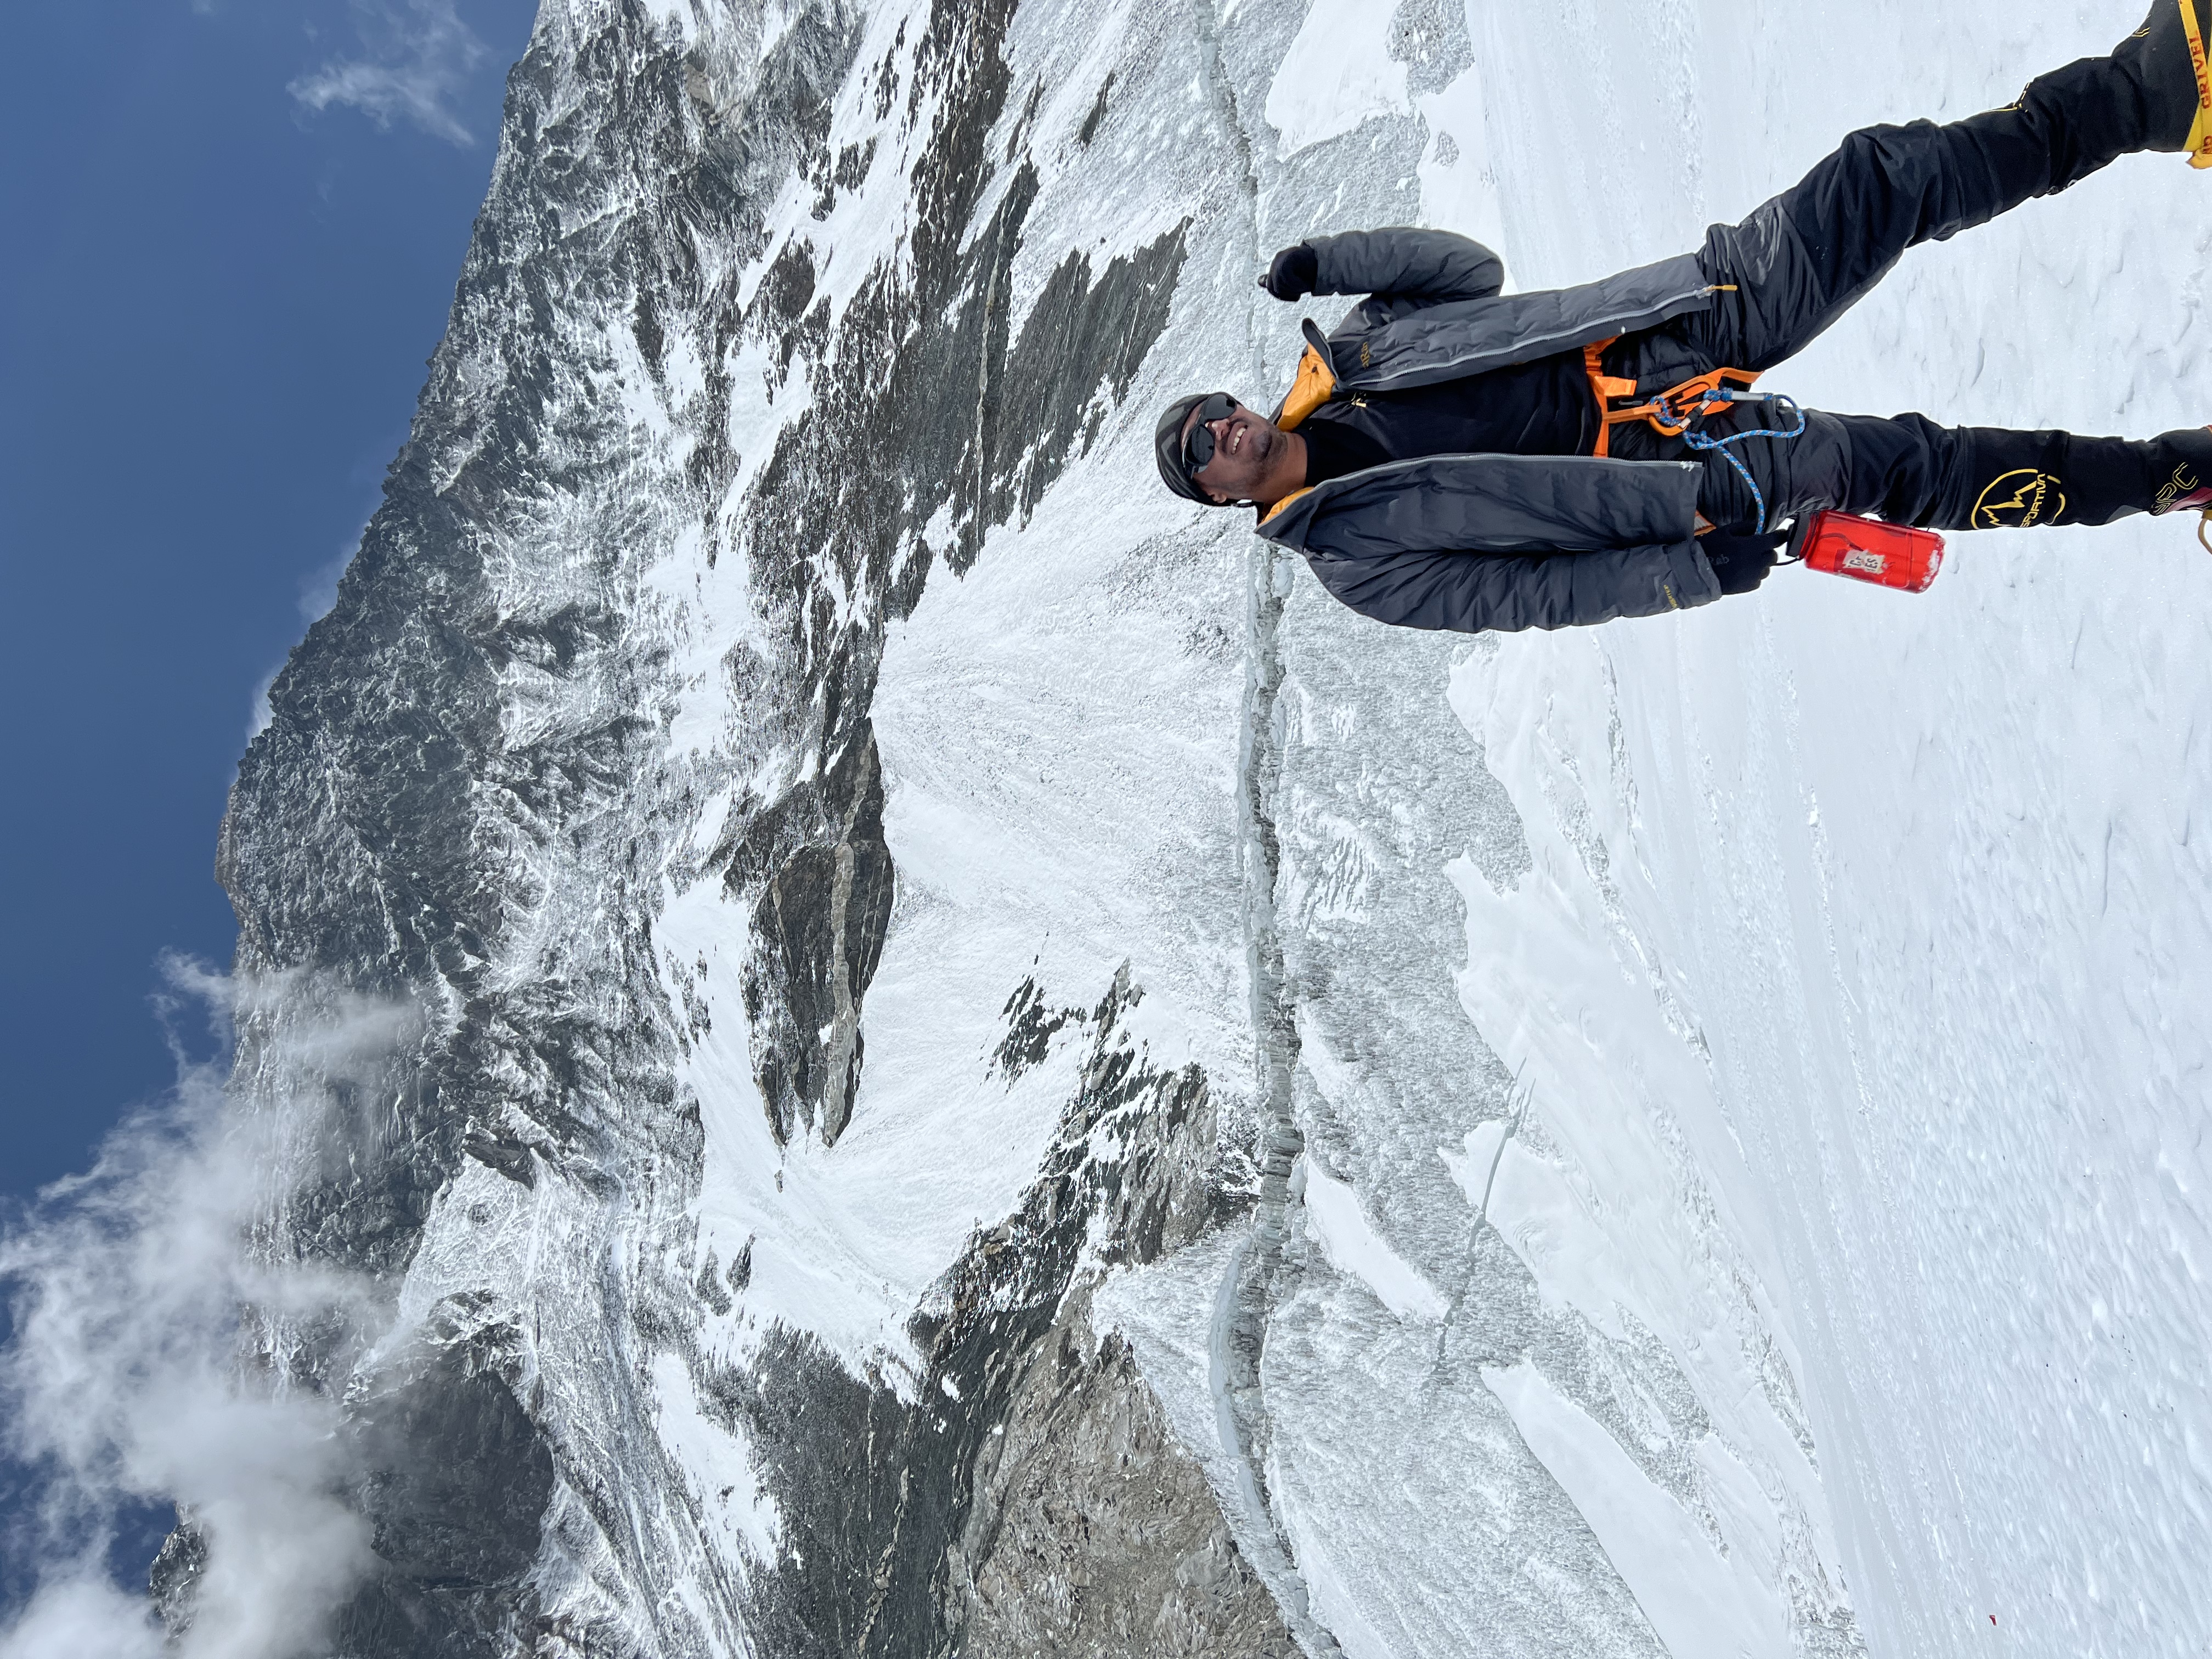 Akke Rahman said he 'can't believe' he climbed Mount Everest